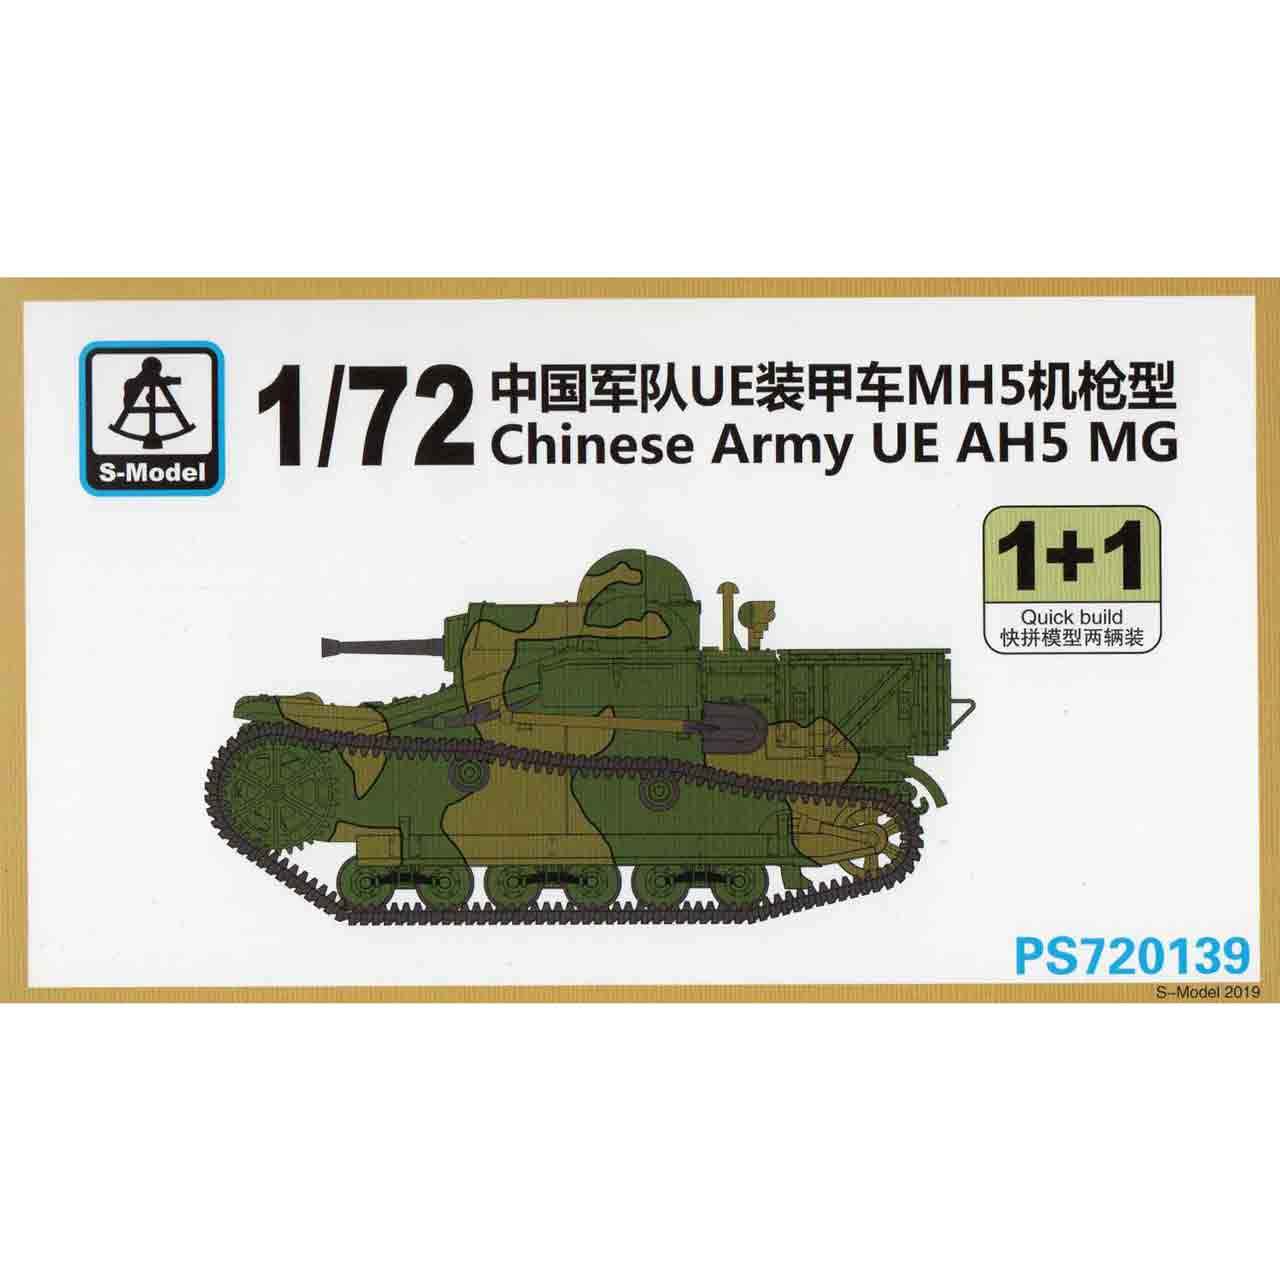 【再入荷】PS720139 中国軍 ルノー UE 小型装甲トラクター AMX機銃搭載型